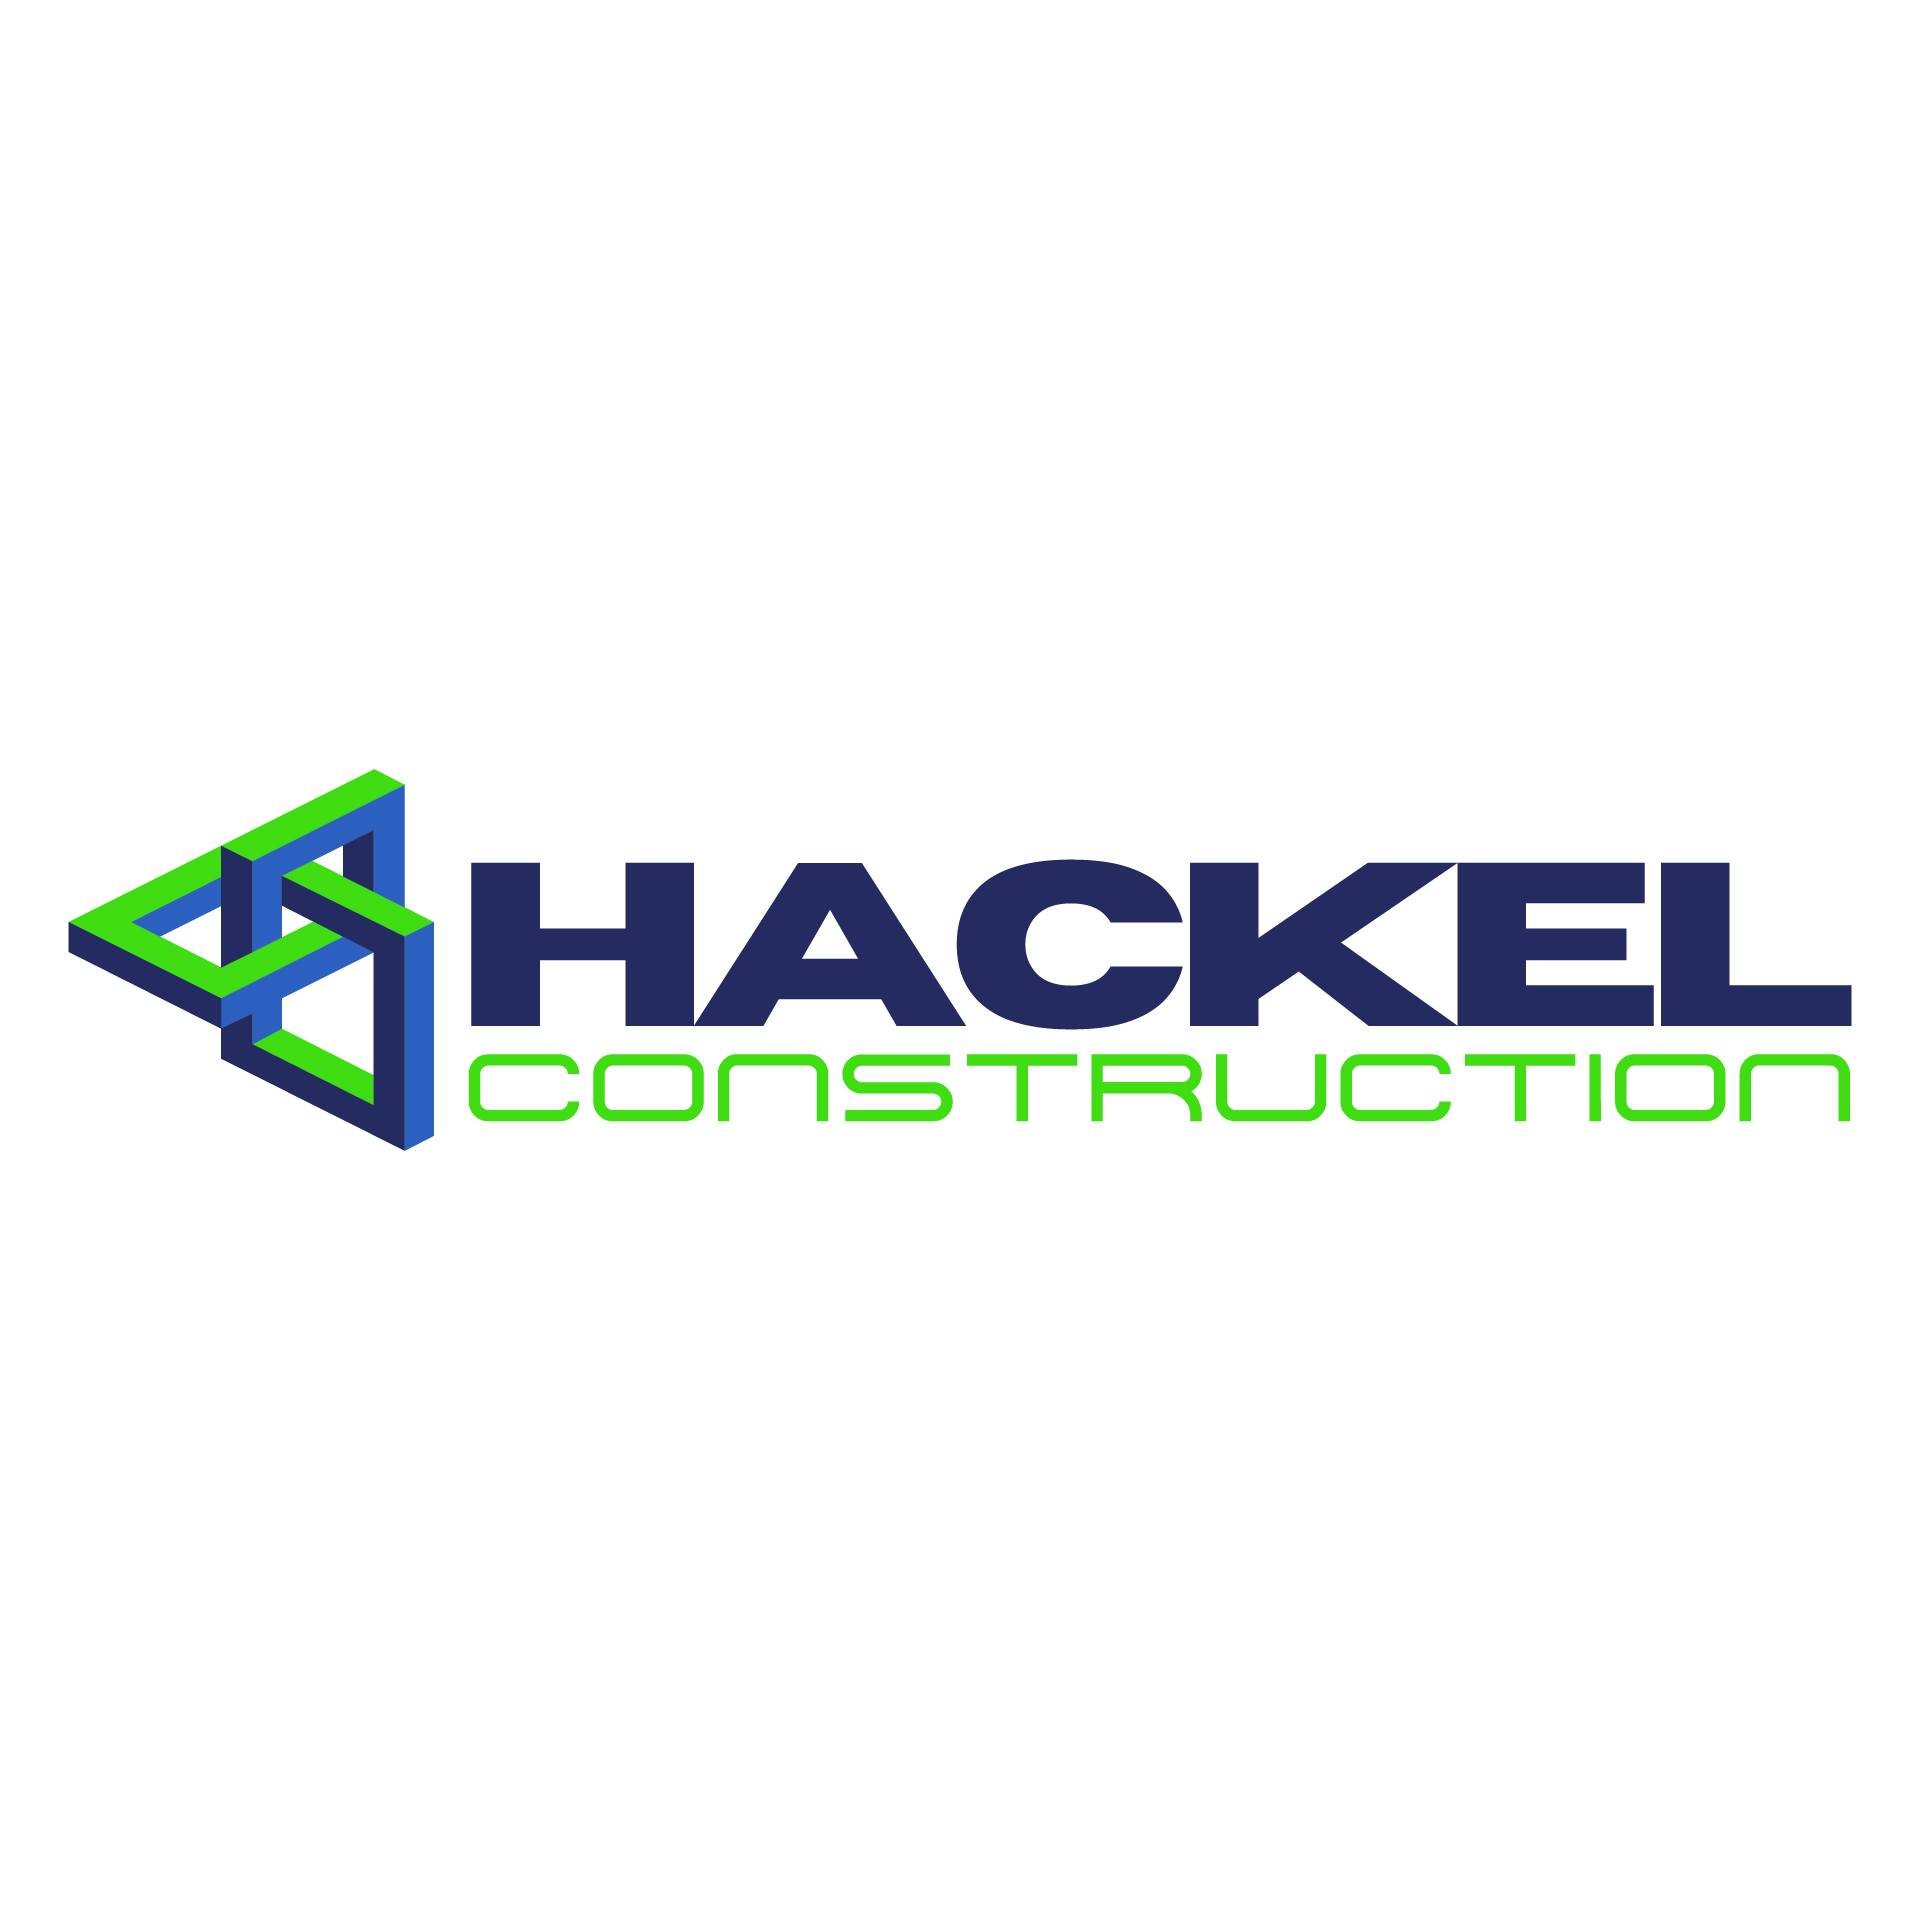 Hackel Construction